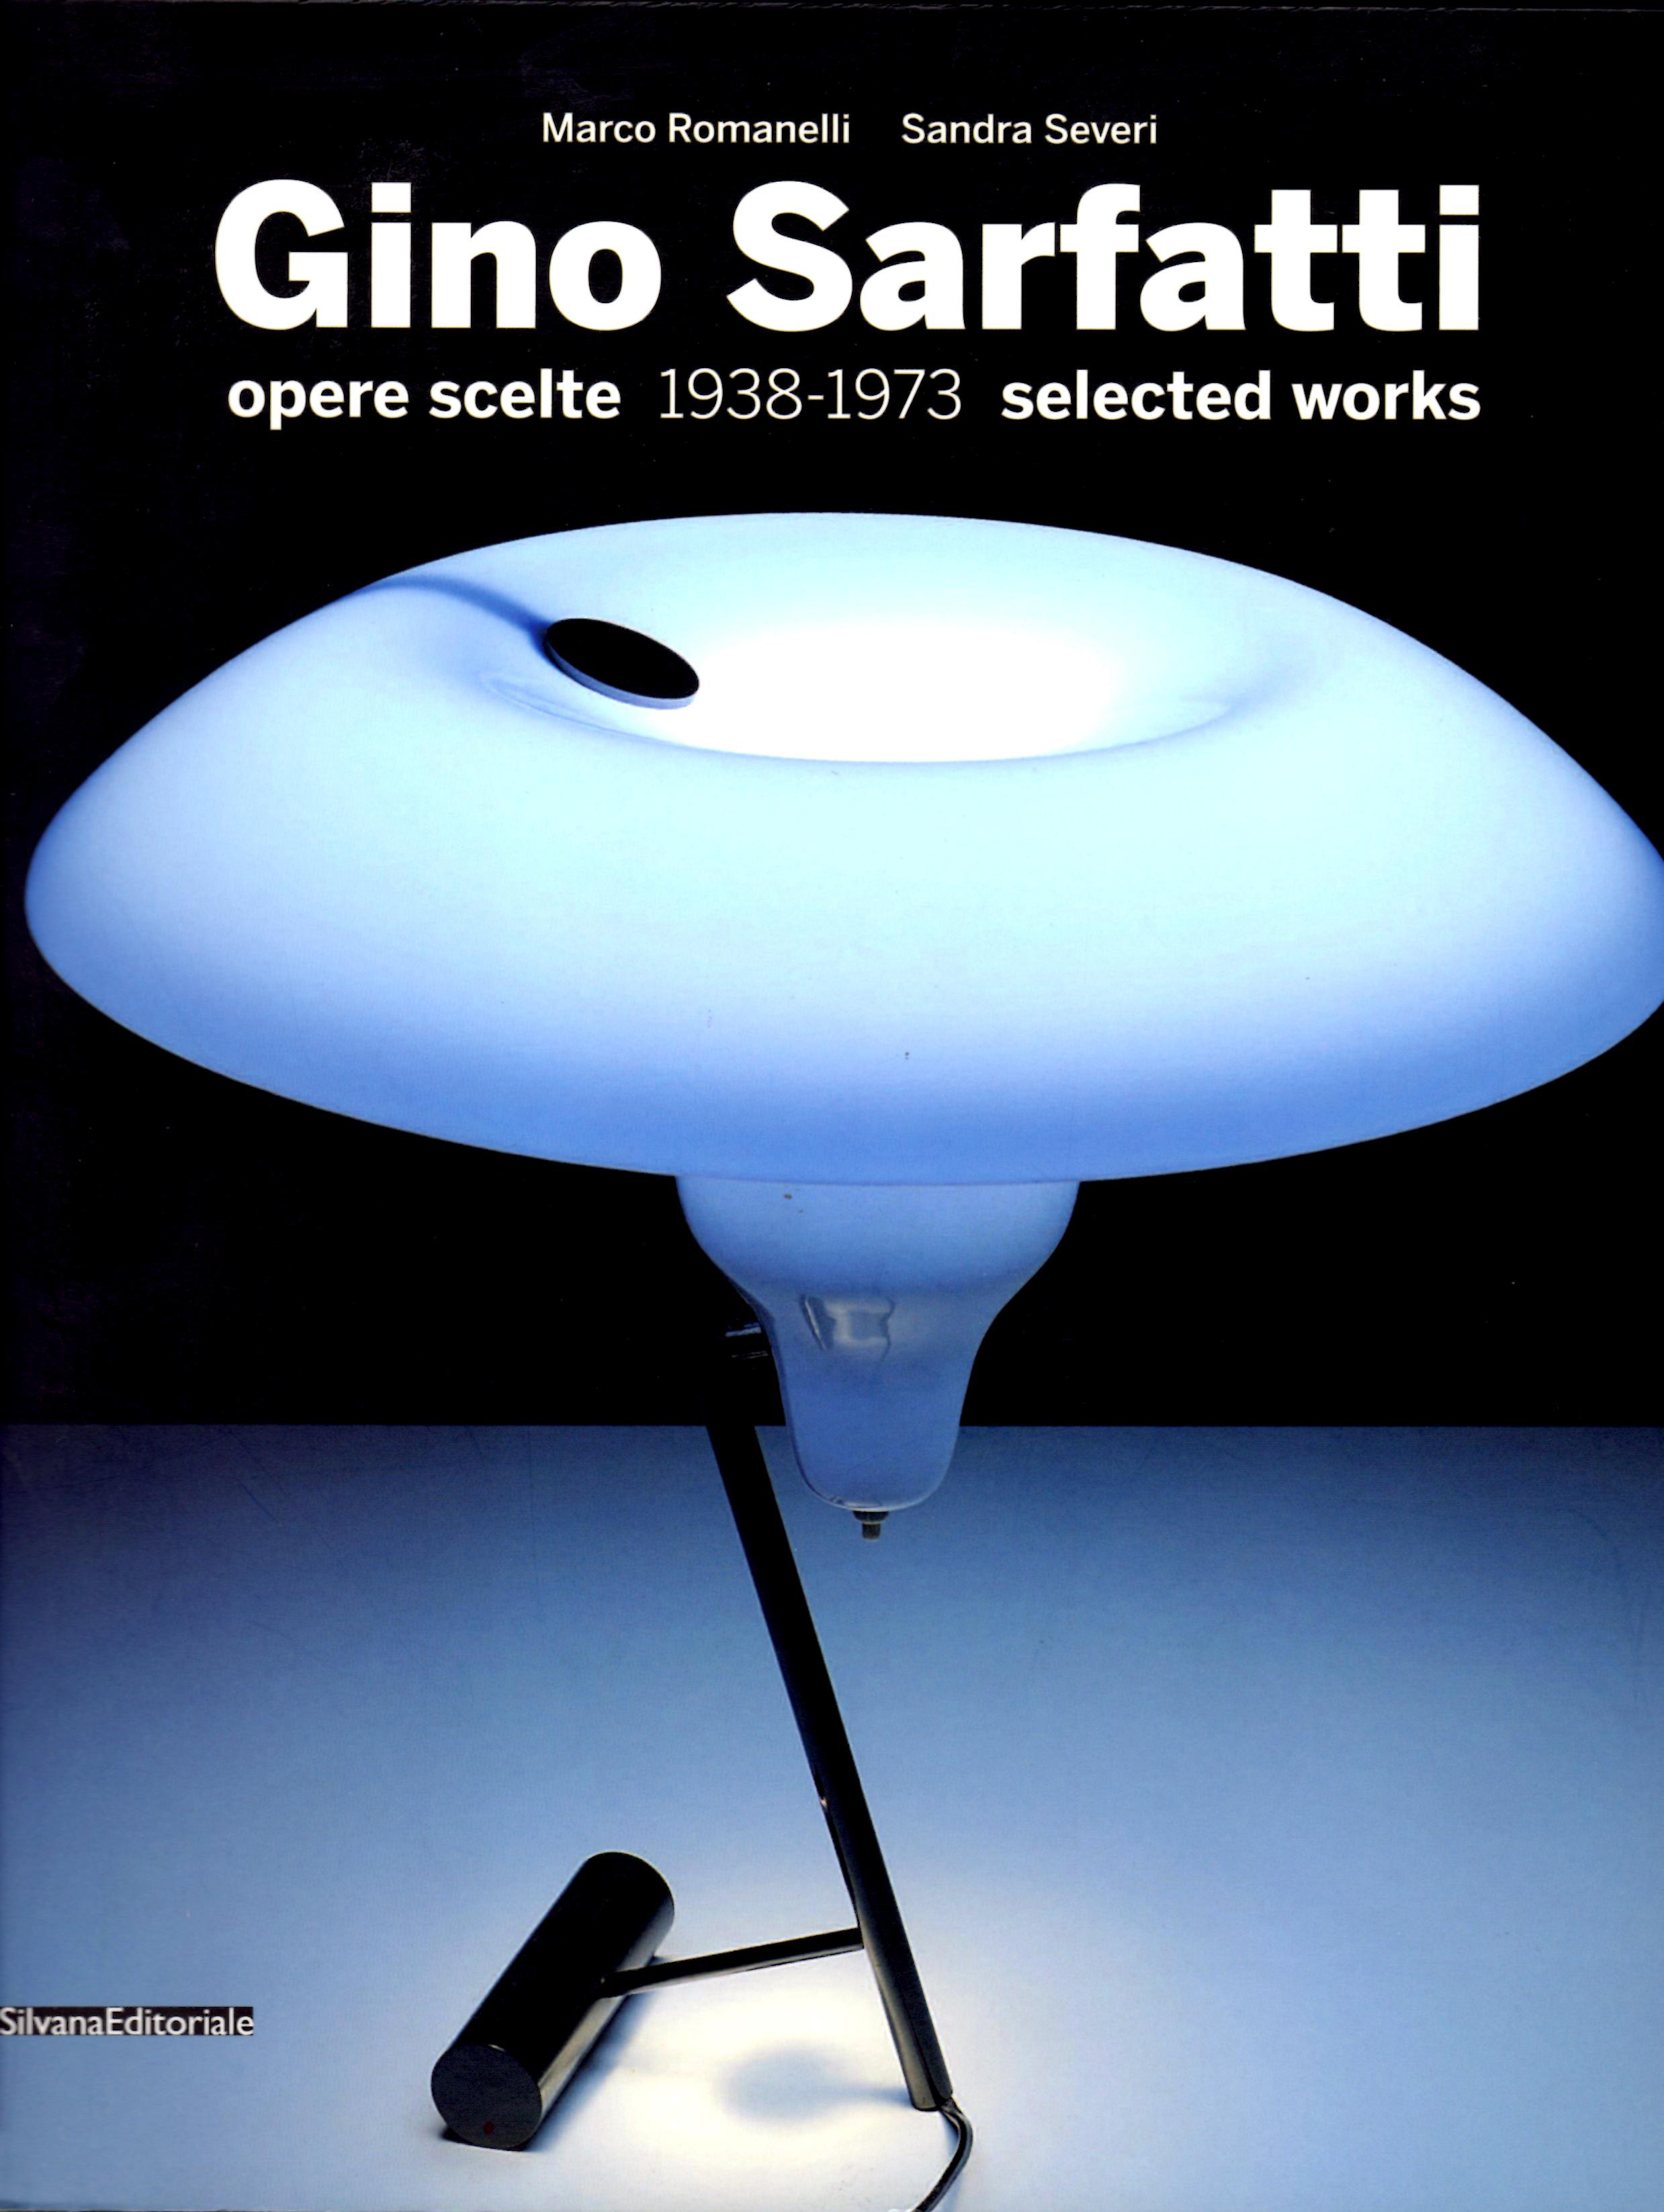 Gino Sarfatti: Lampada da terra Modello 1073 3 del XX Secolo Design. Opera d'arte esemplare - Robertaebasta® Art Gallery opere d’arte esclusive.